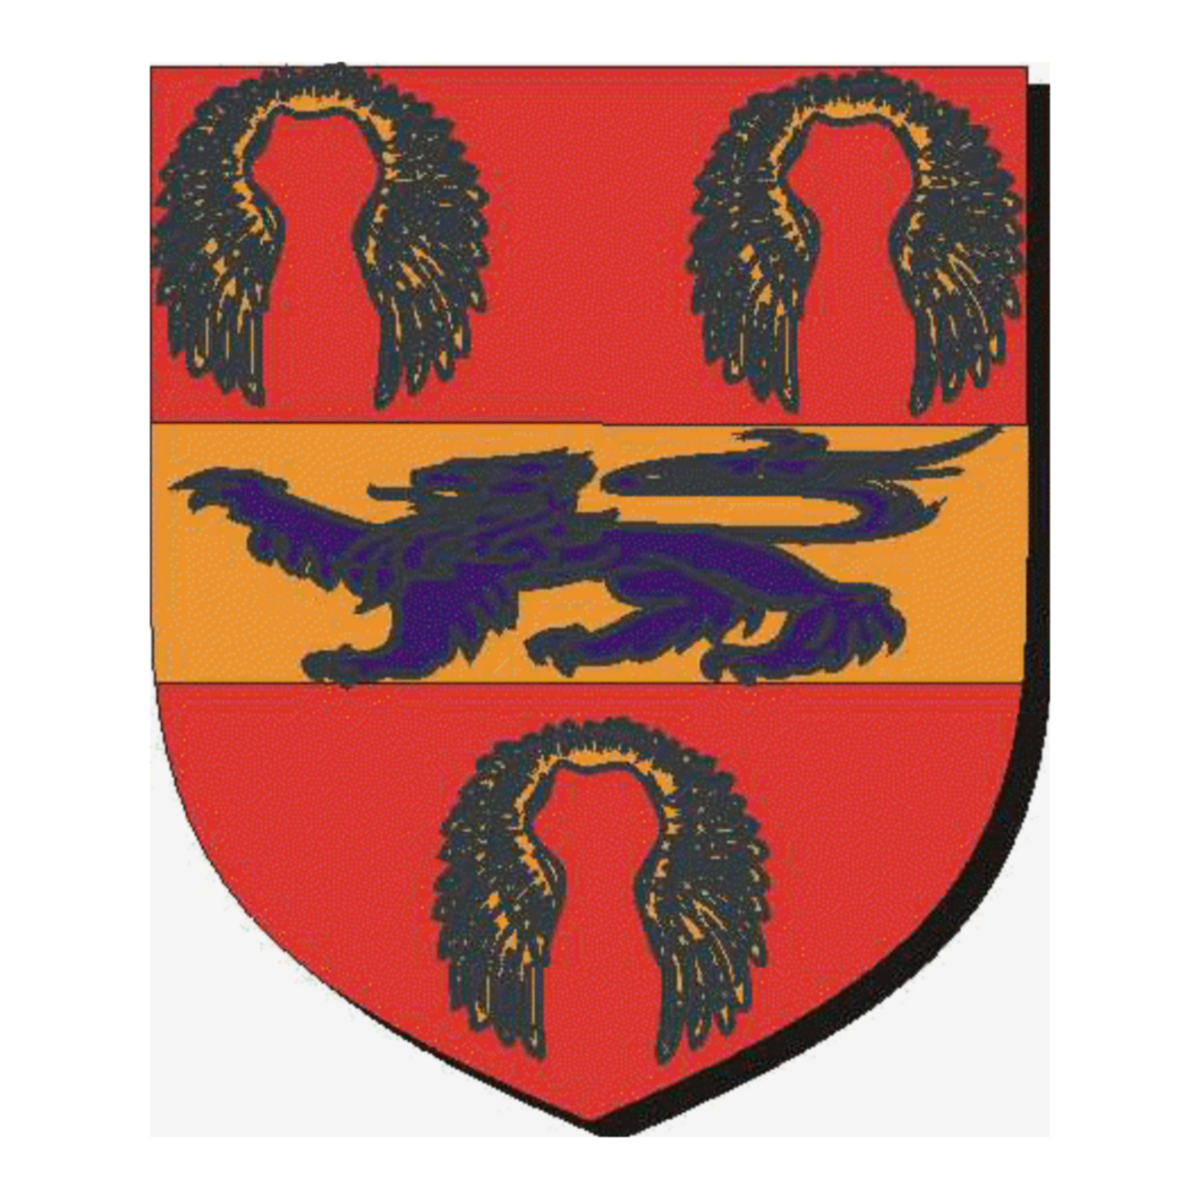 Coat of arms of familySkinner